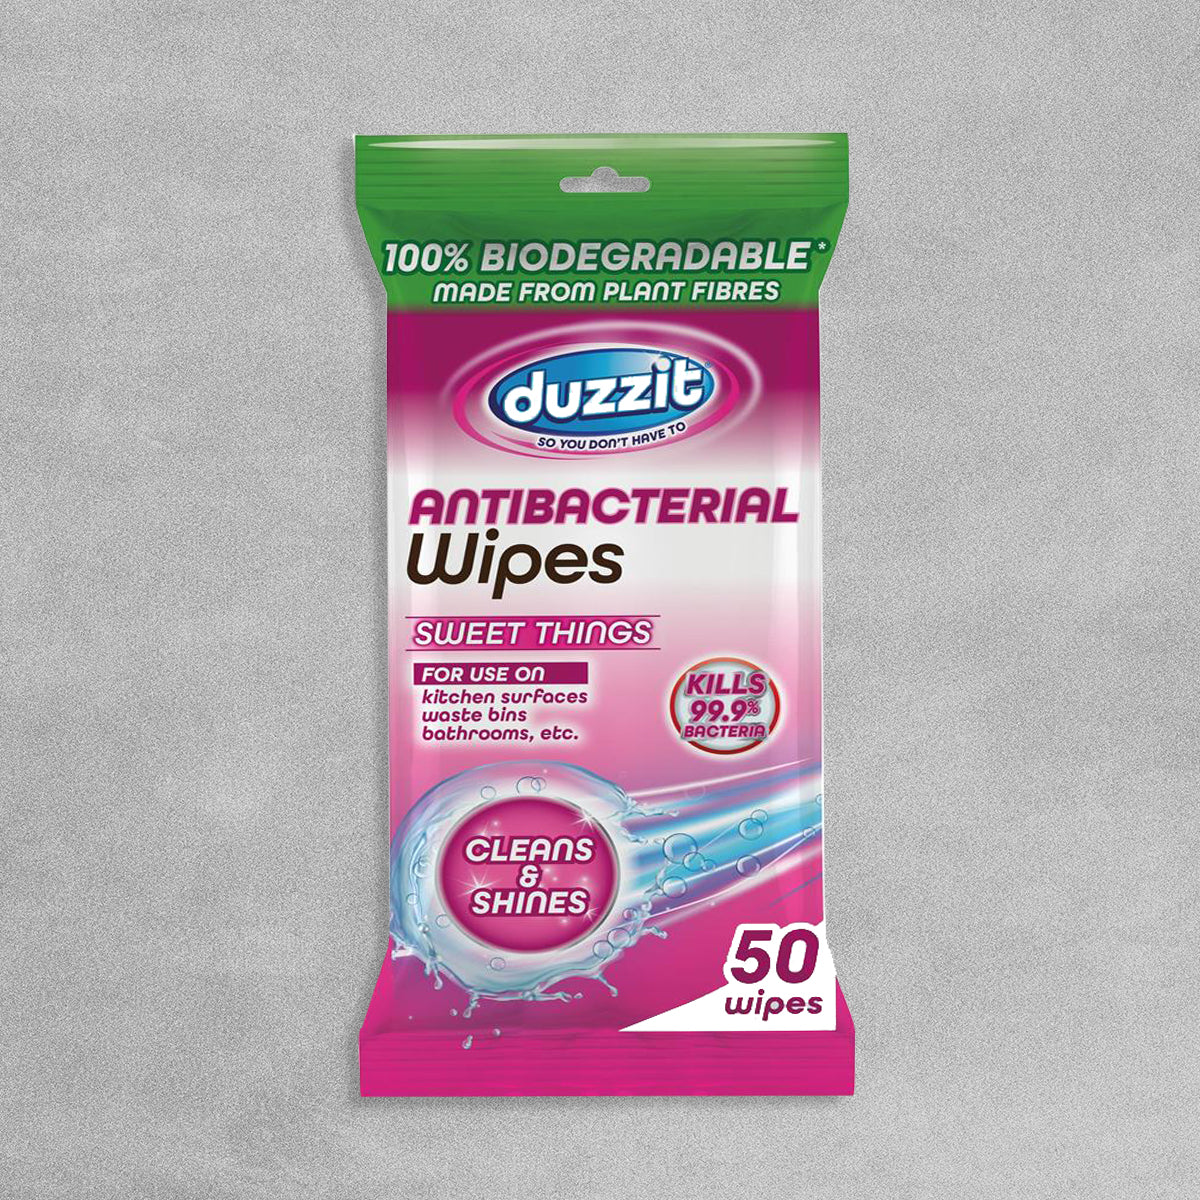 Duzzit Antibacterial Wipes 'Sweet Things' - Pack of 50